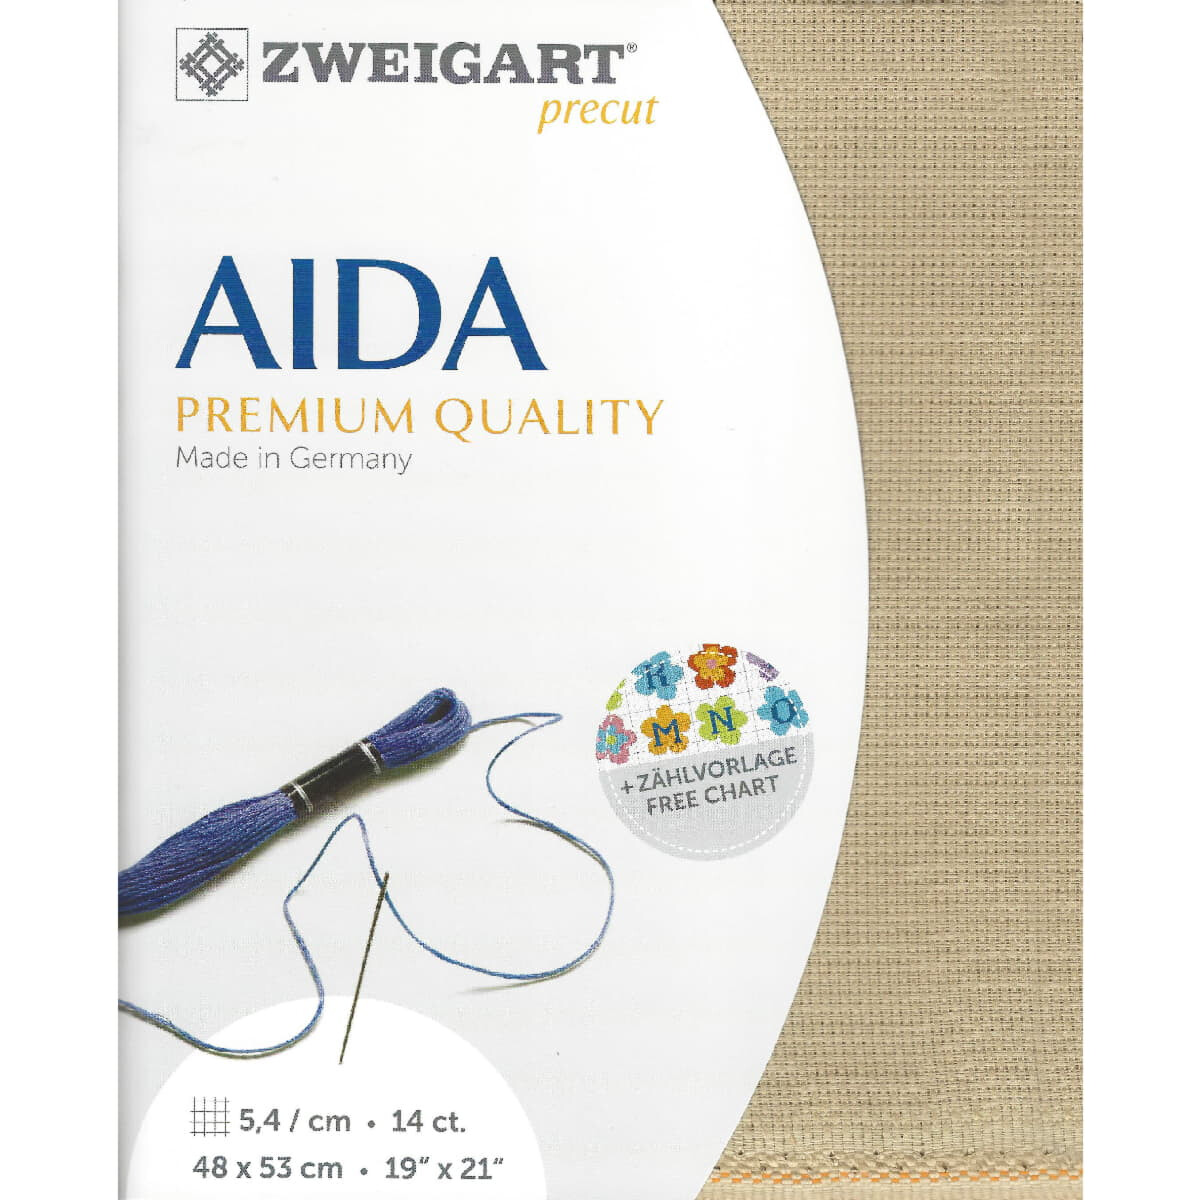 AIDA Zweigart Precute 14 ct. Stern Aida 3706 couleur 309...